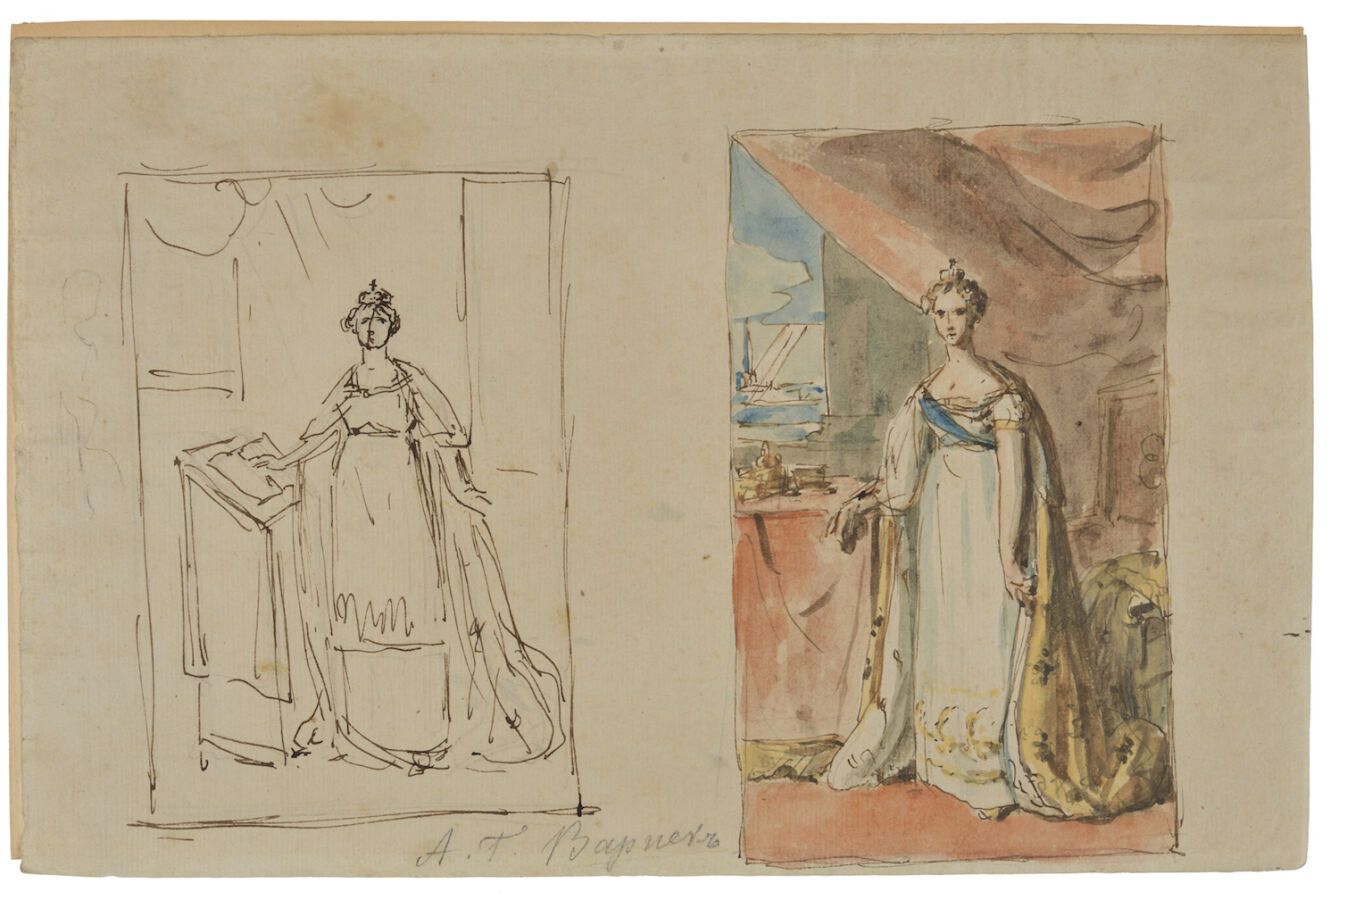 Null 让-洛朗-莫尼耶(？)。伊丽莎白-阿列克谢耶夫娜皇后的肖像。同一幅肖像的两幅草图。大约1810年。
纸上水彩画，21 x 32厘米。
有铅笔题词，将草&hellip;